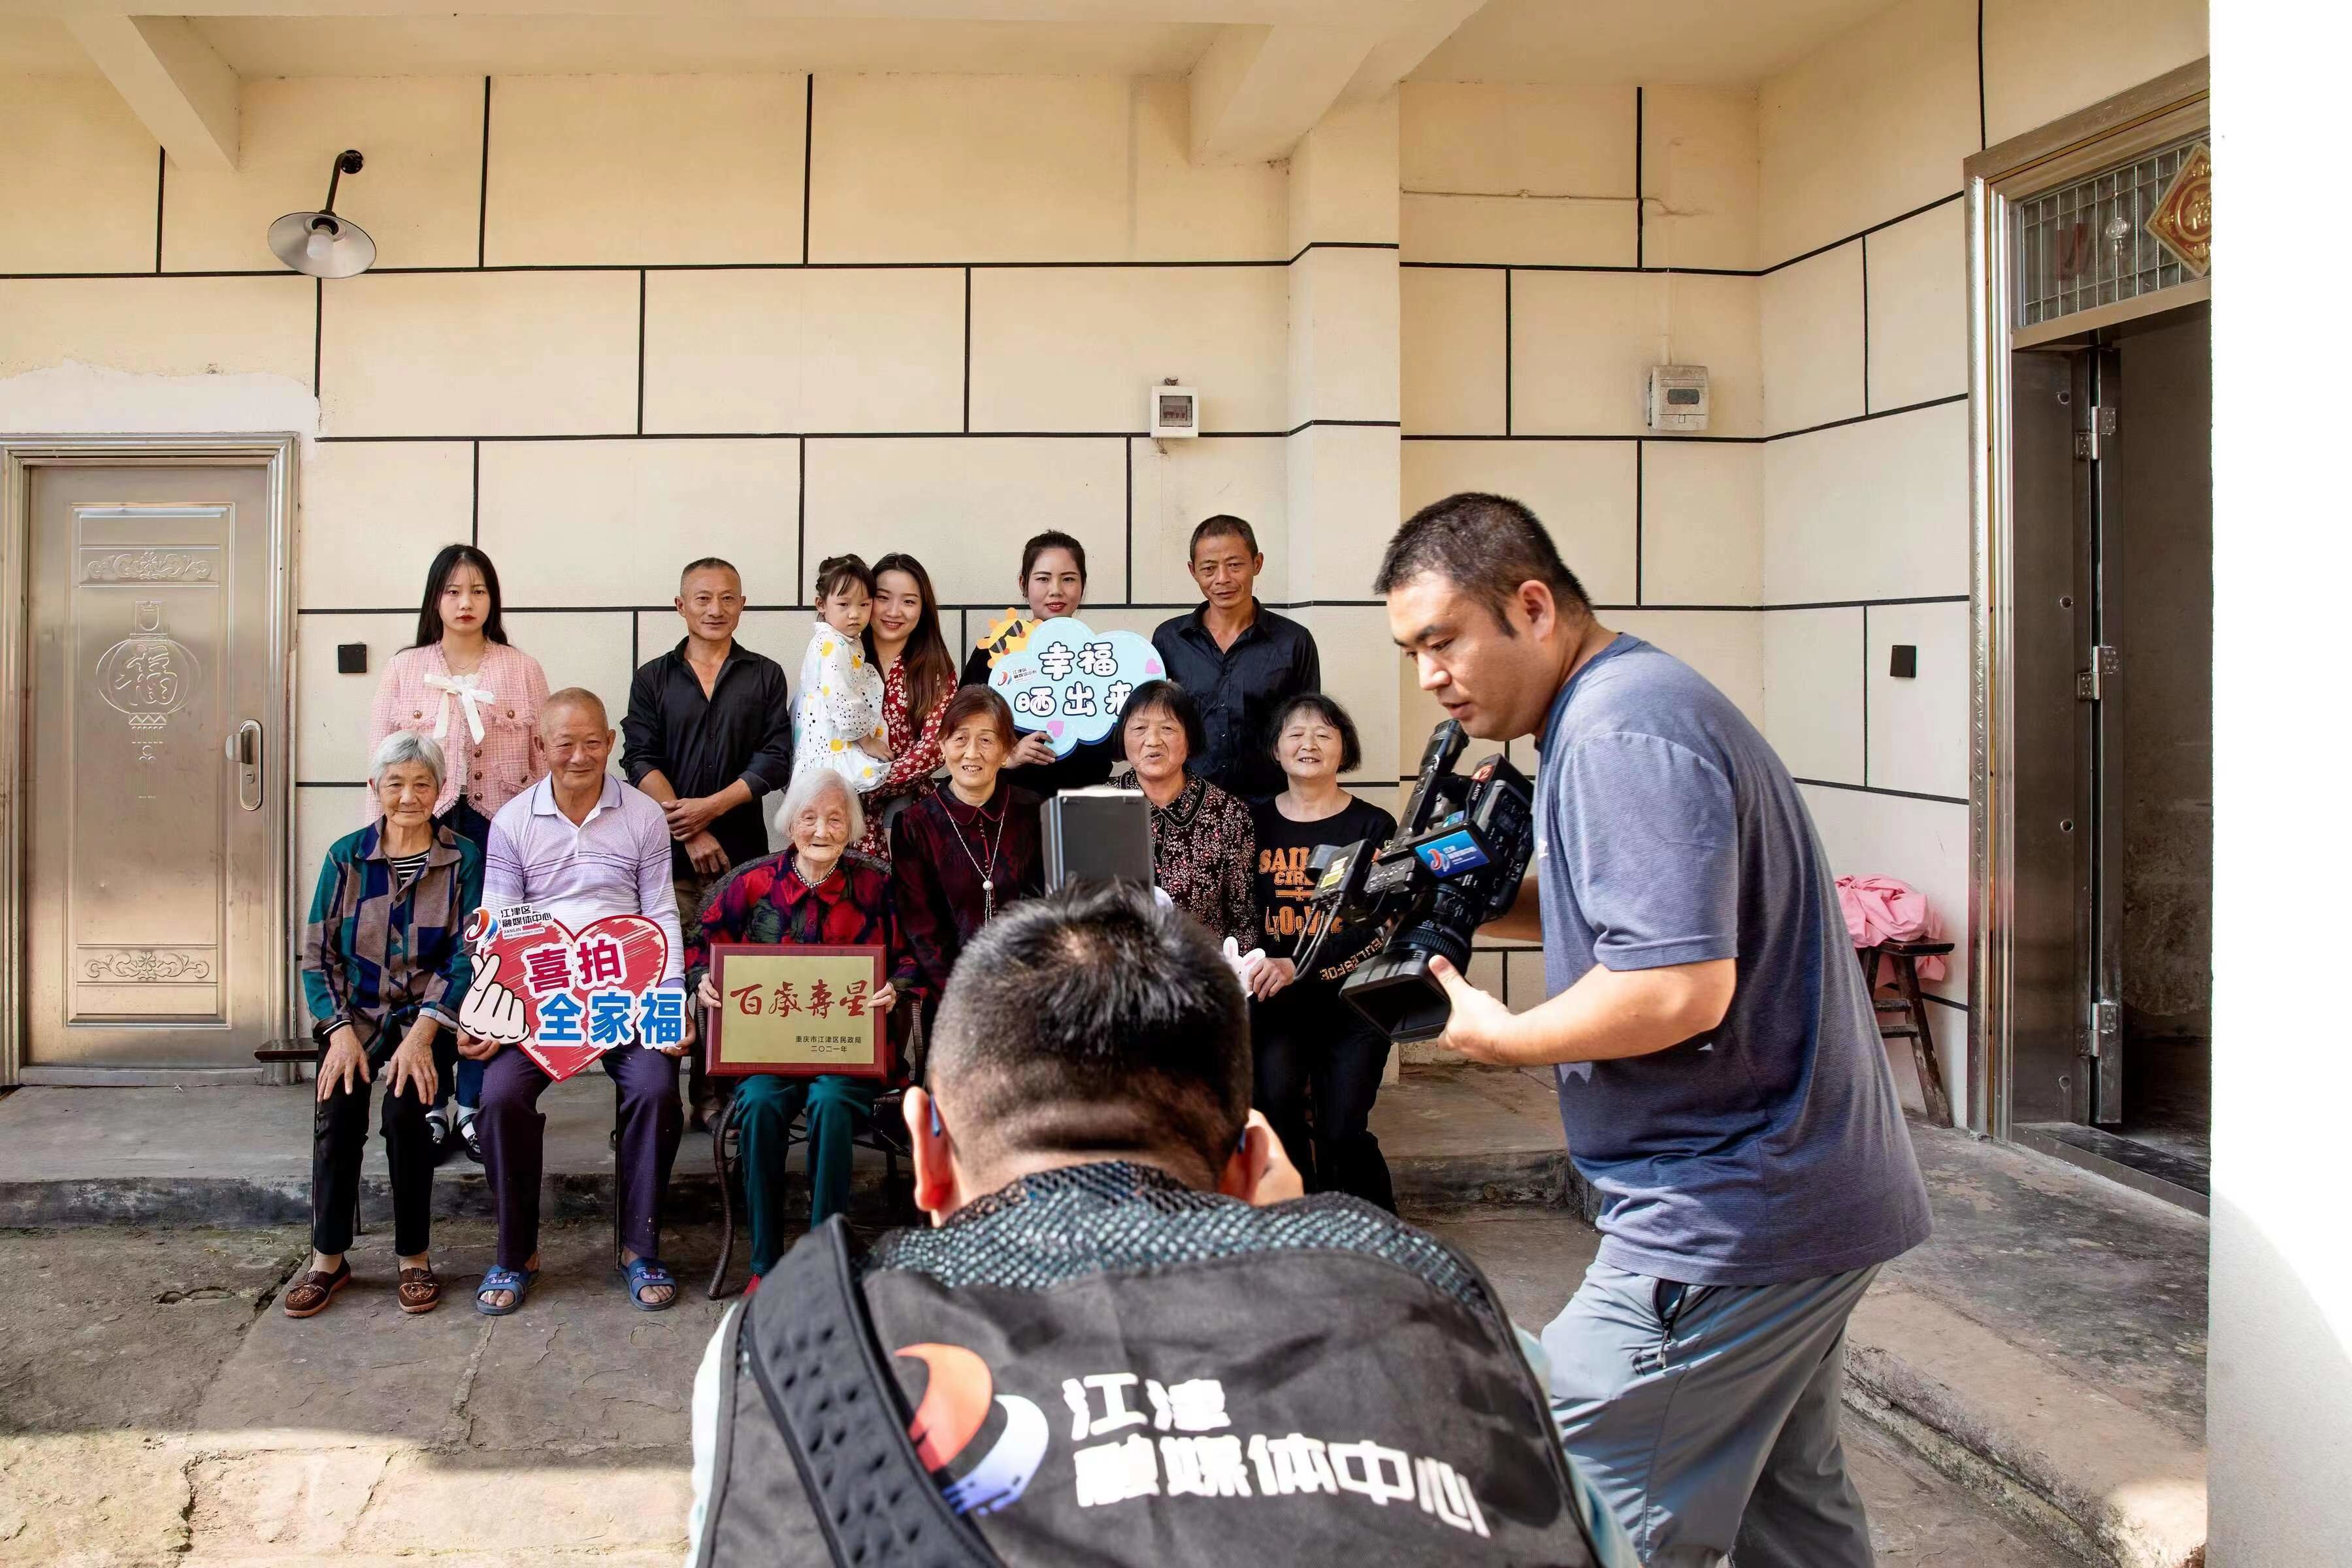 记录百岁老人家庭幸福时刻 江津区启动拍摄百岁老人全家福志愿服务活动